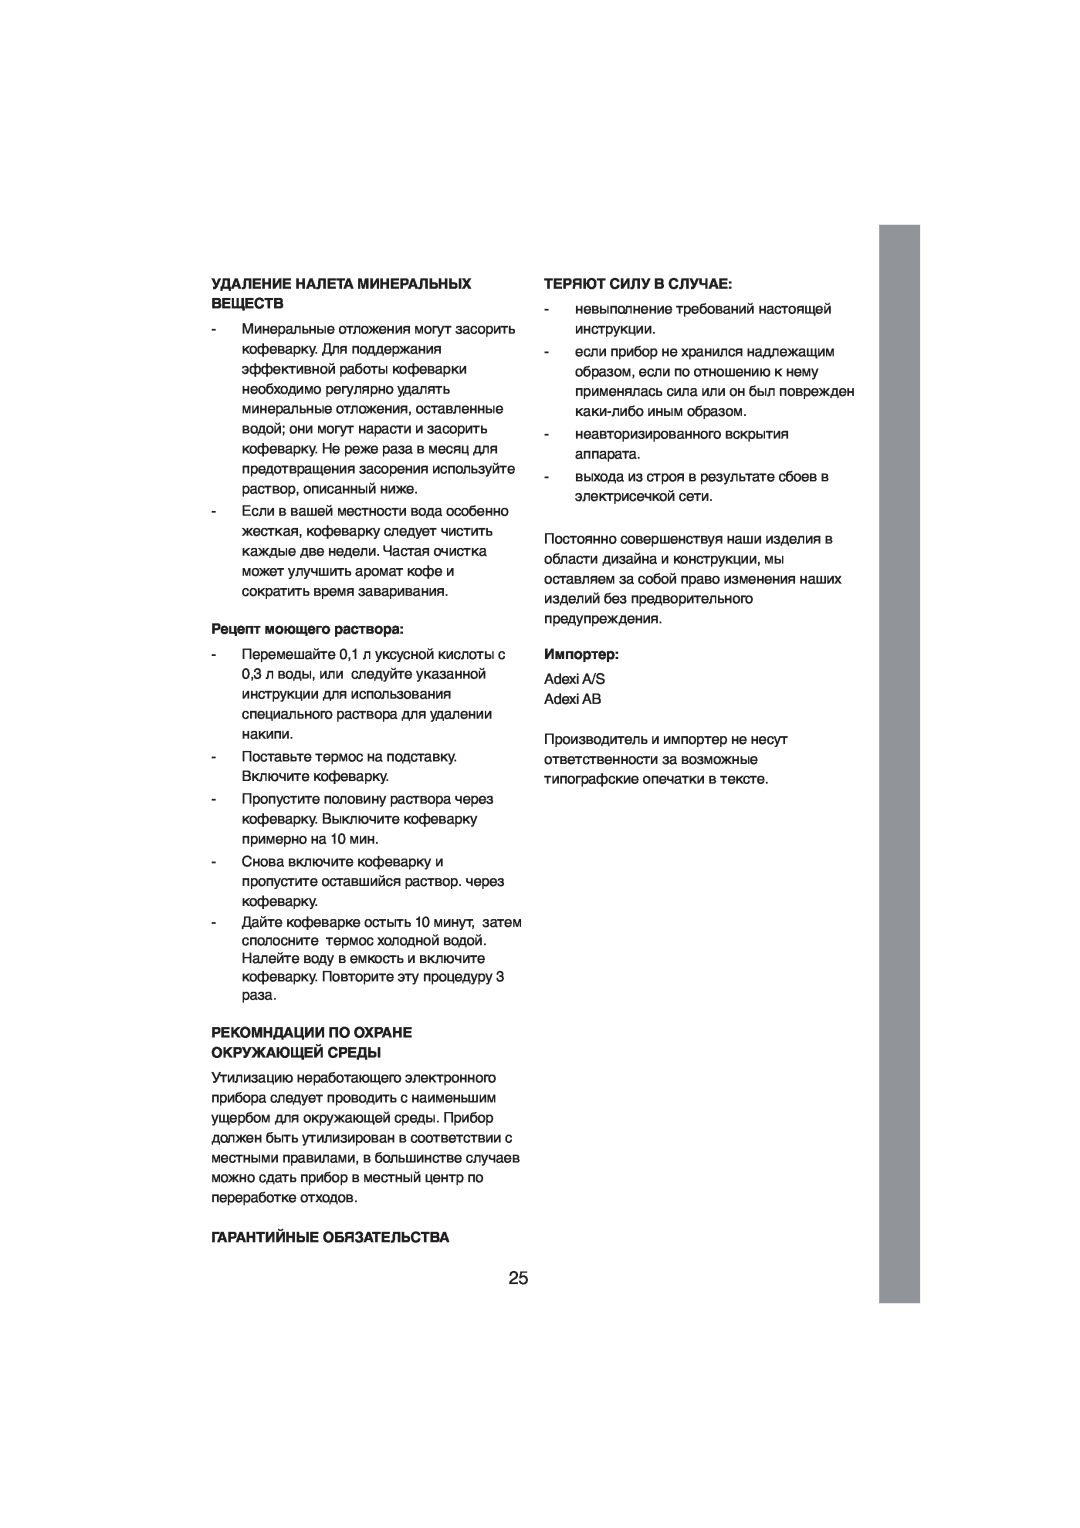 Melissa 245-021 manual Удаление Налета Минеральных Веществ, Рецепт моющего раствора, Рекомндации По Охране Окружающей Среды 